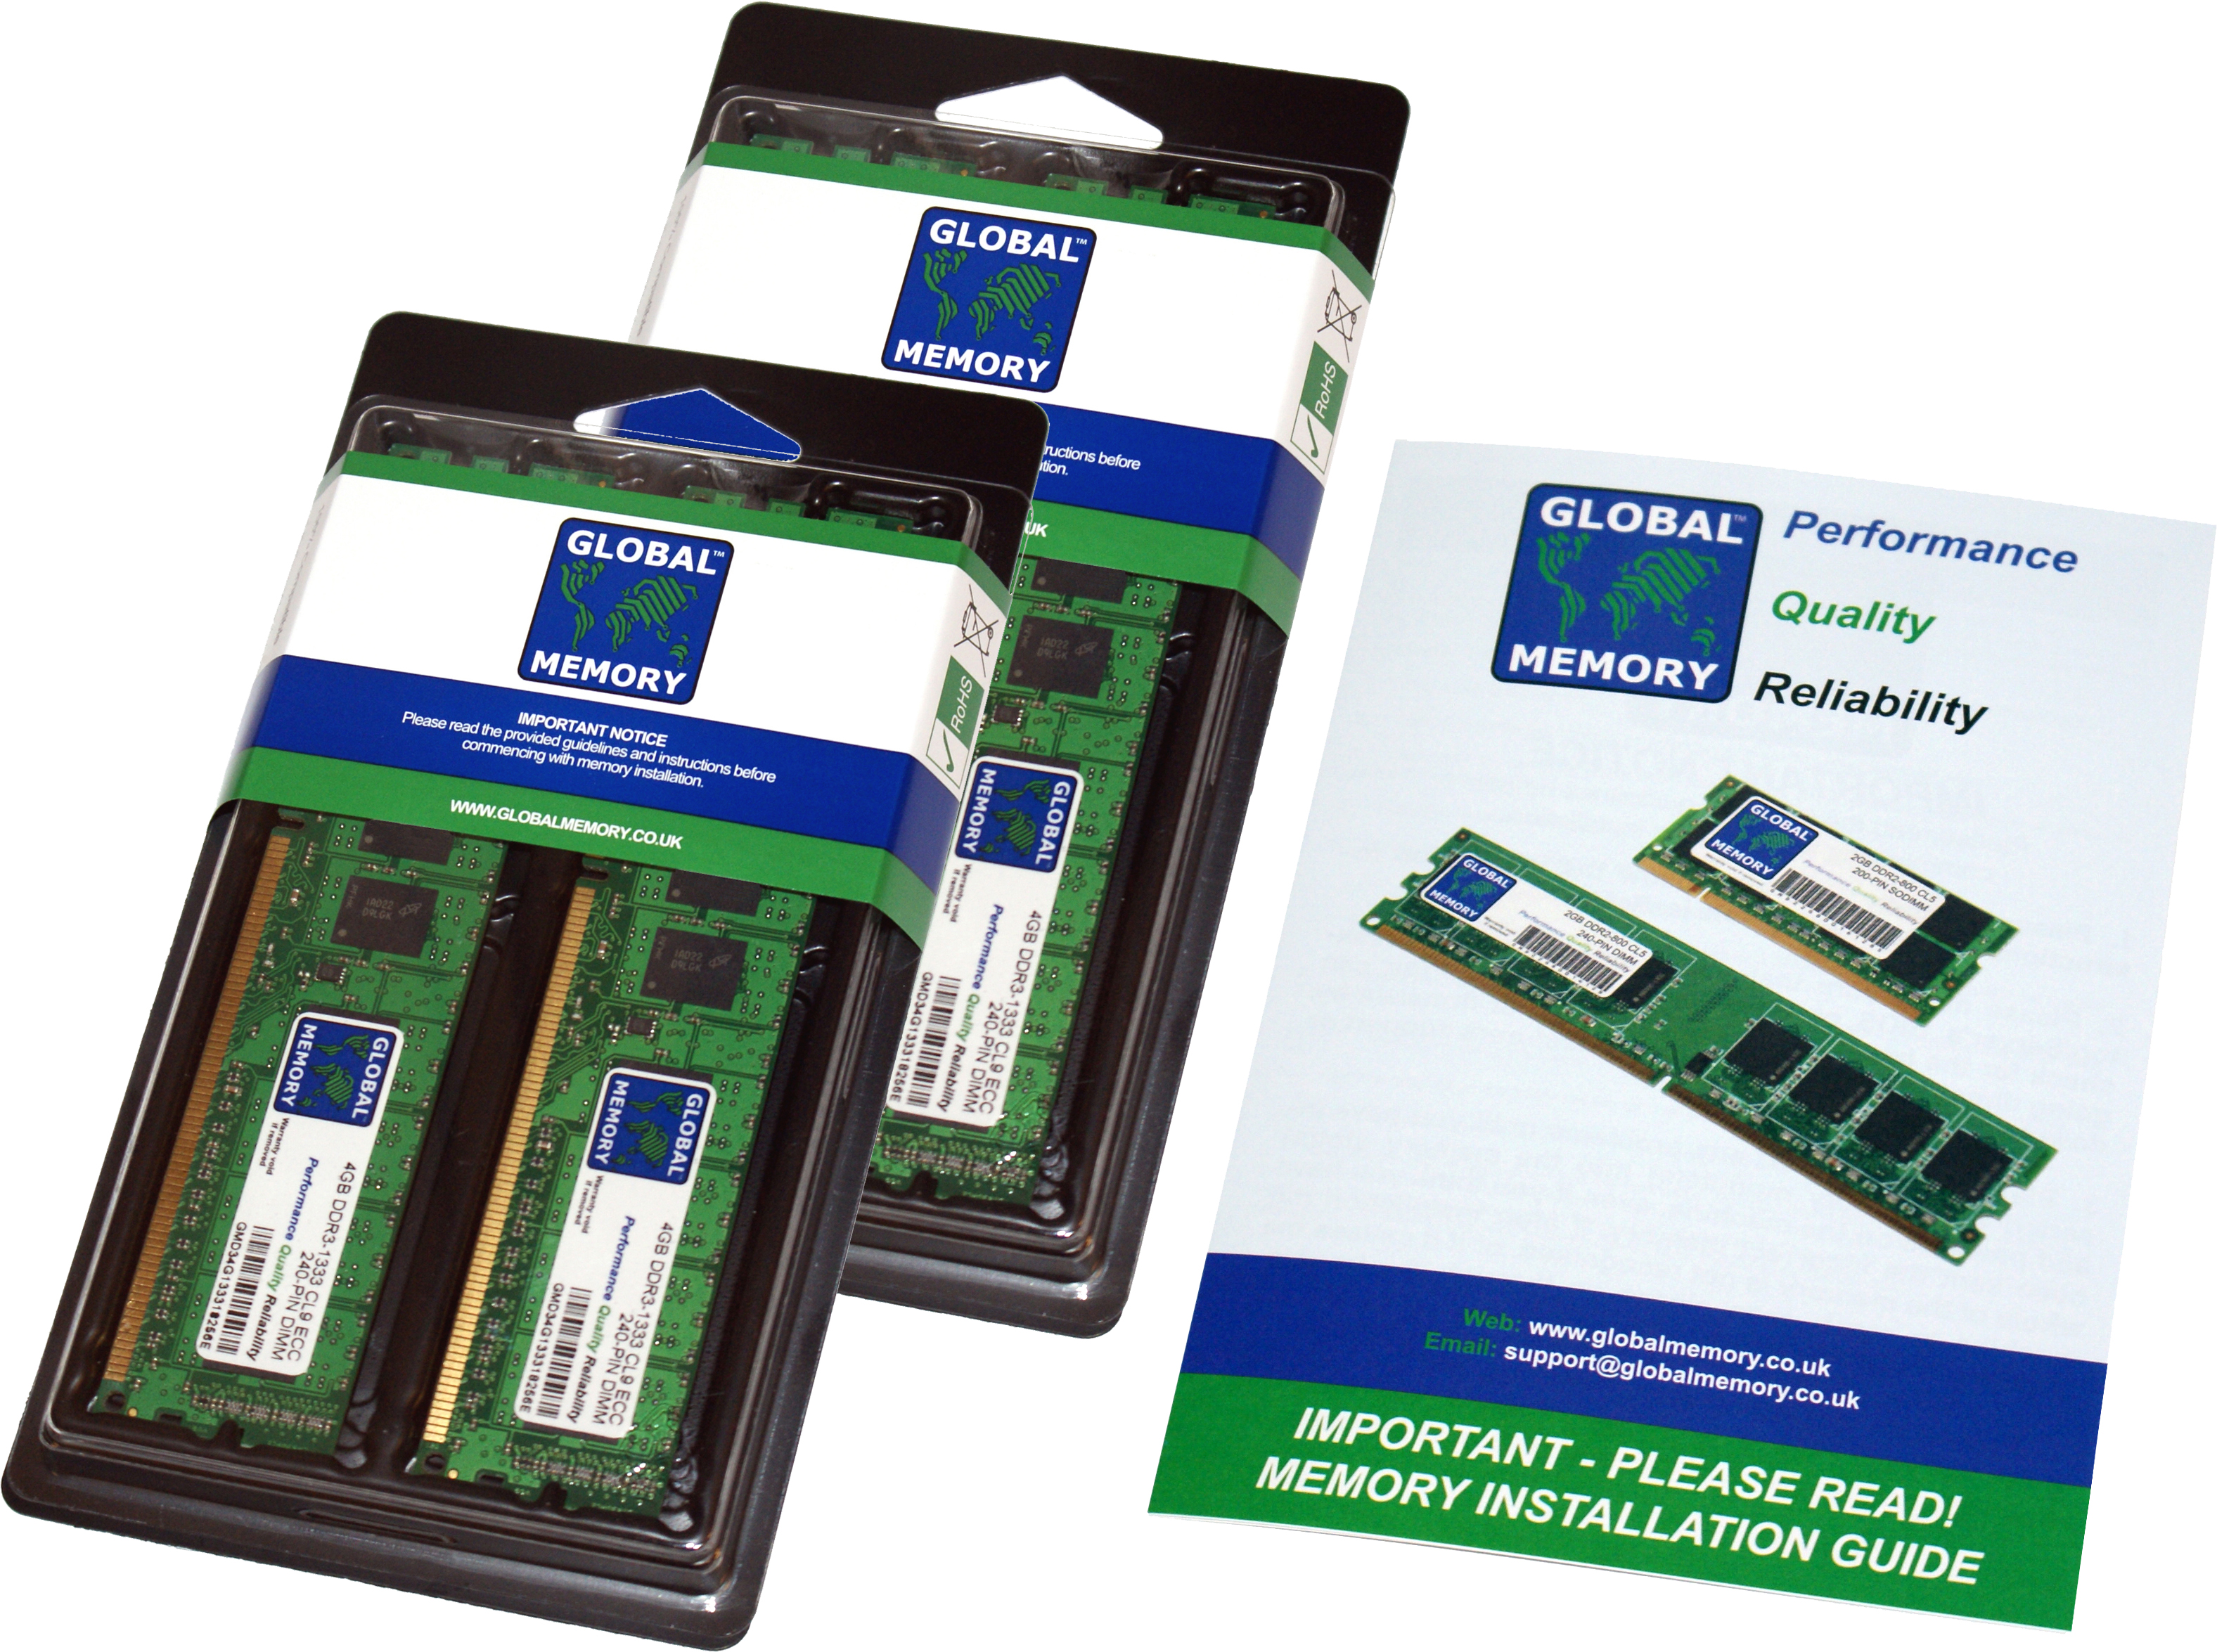 16GB (4 x 4GB) DDR4 2400MHz PC4-19200 288-PIN ECC DIMM (UDIMM) MEMORY RAM KIT FOR HEWLETT-PACKARD SERVERS/WORKSTATIONS